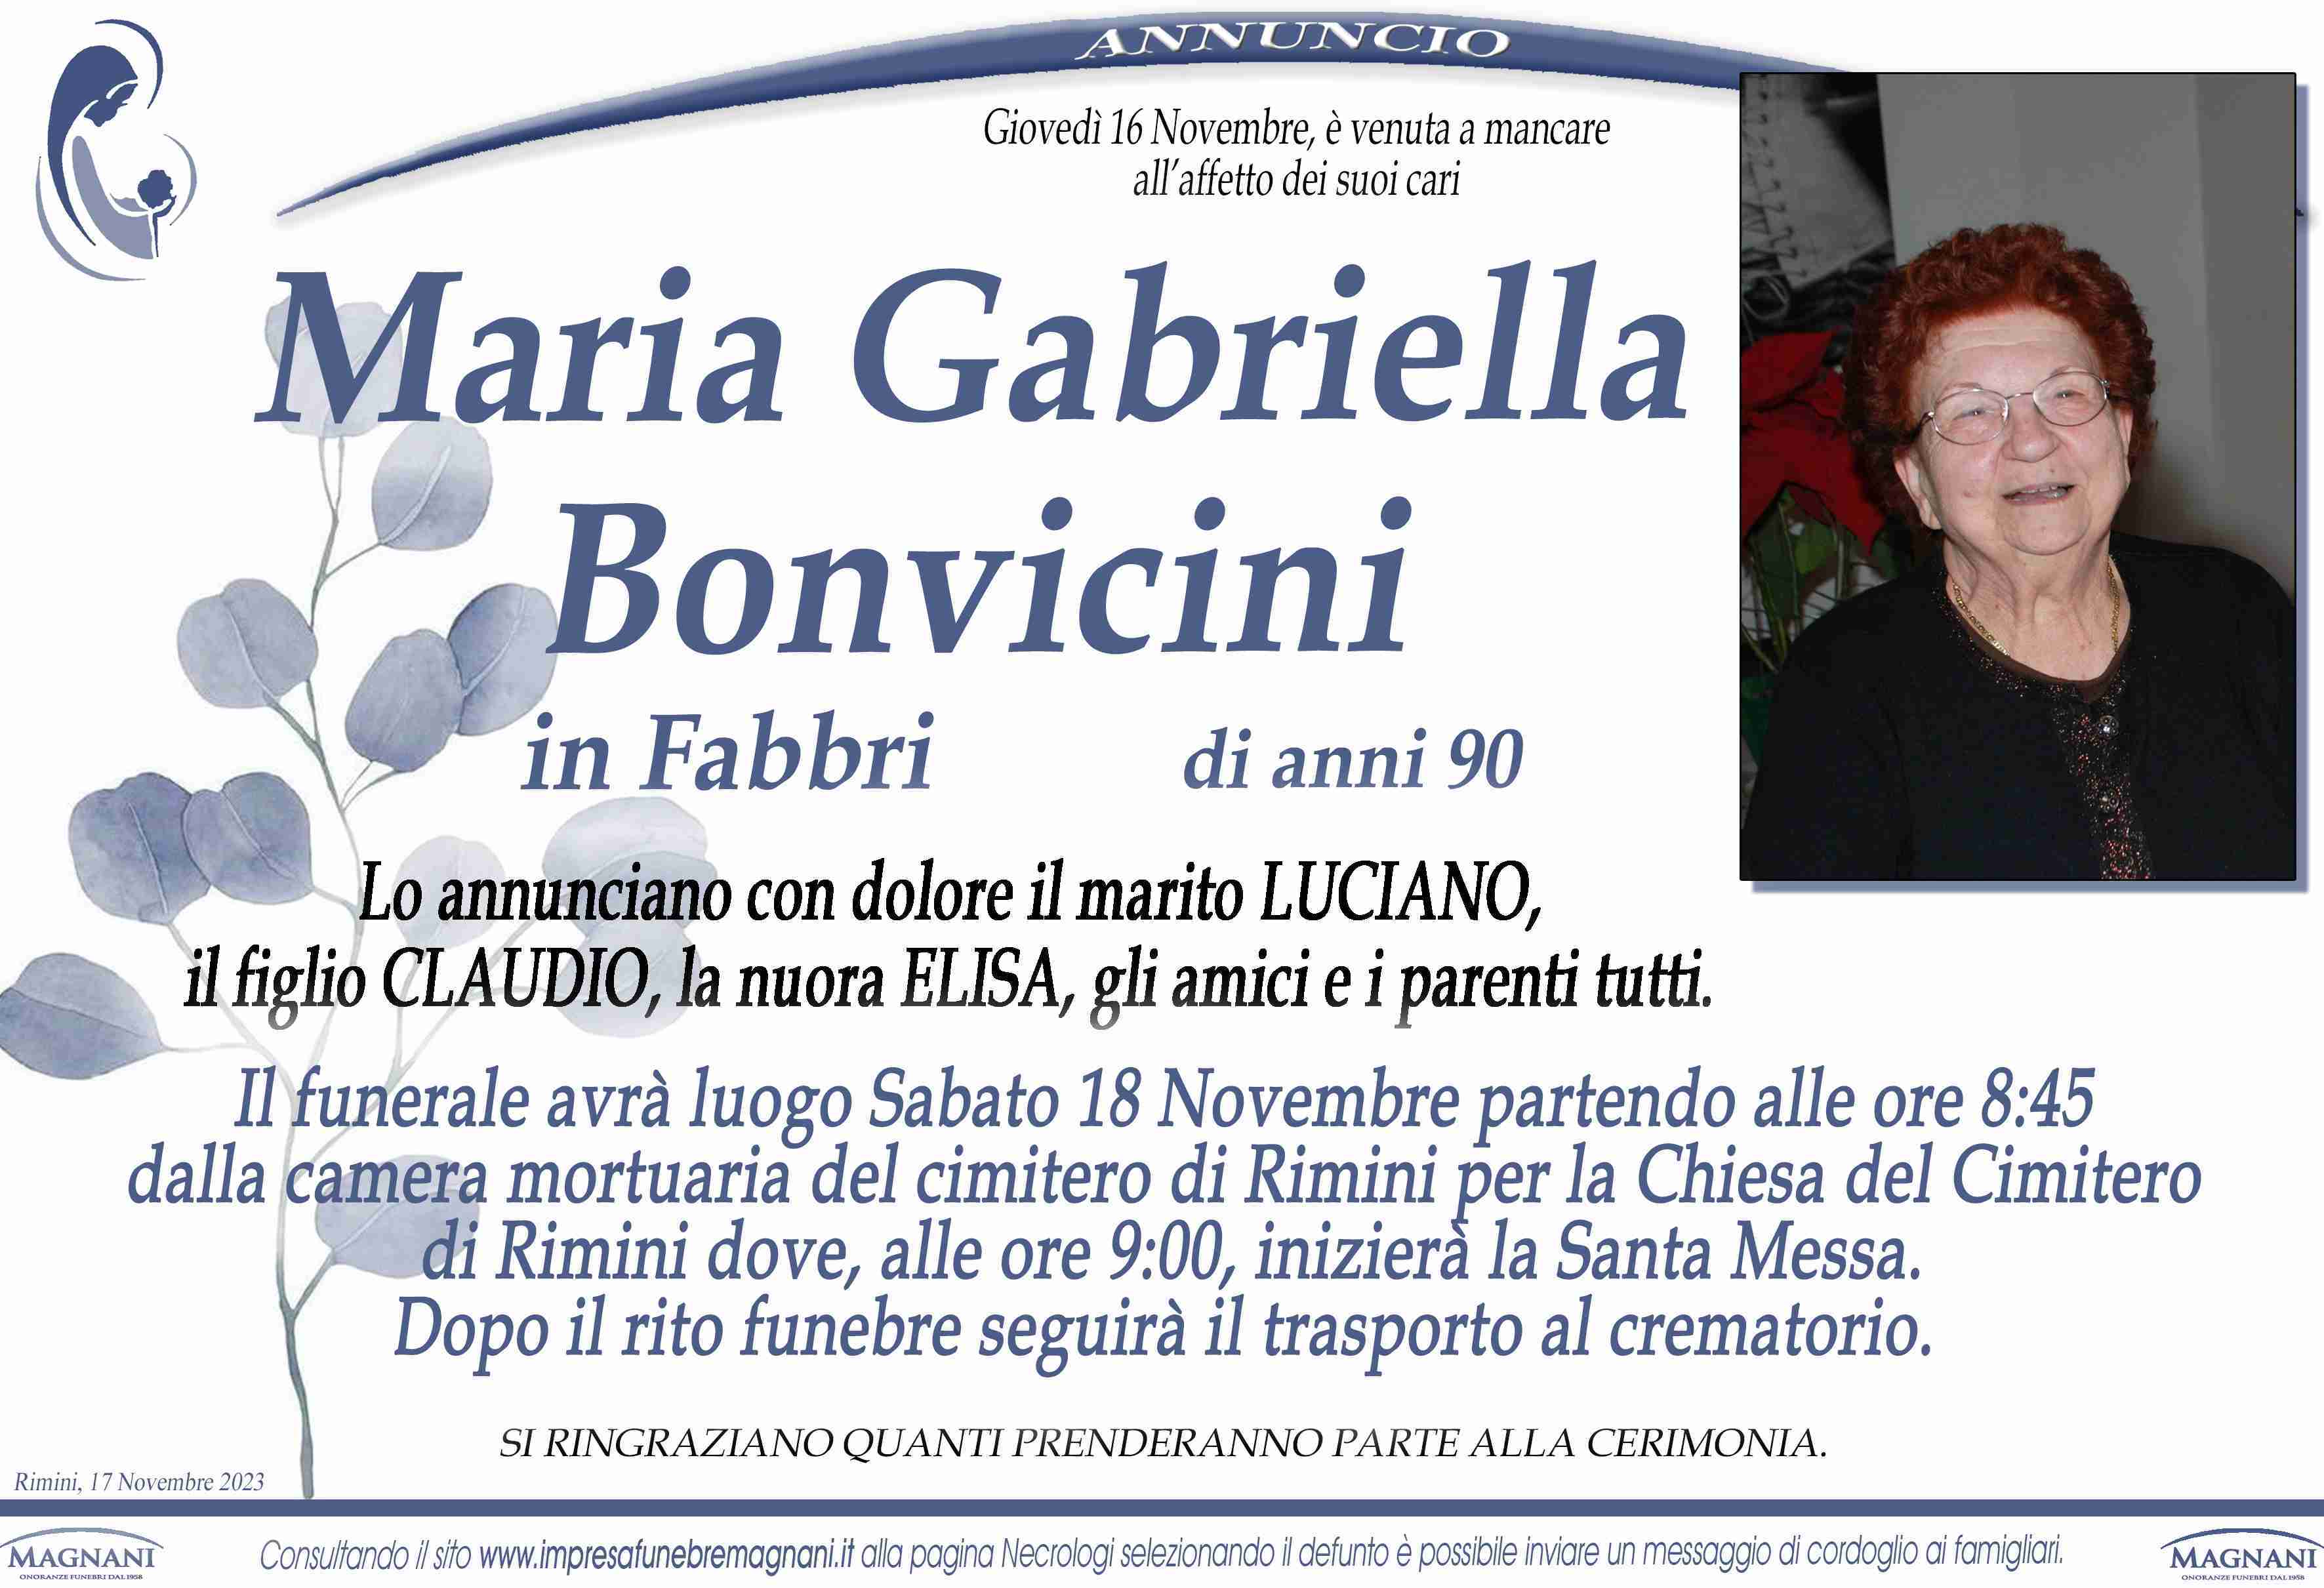 Maria Gabriella Bonvicini